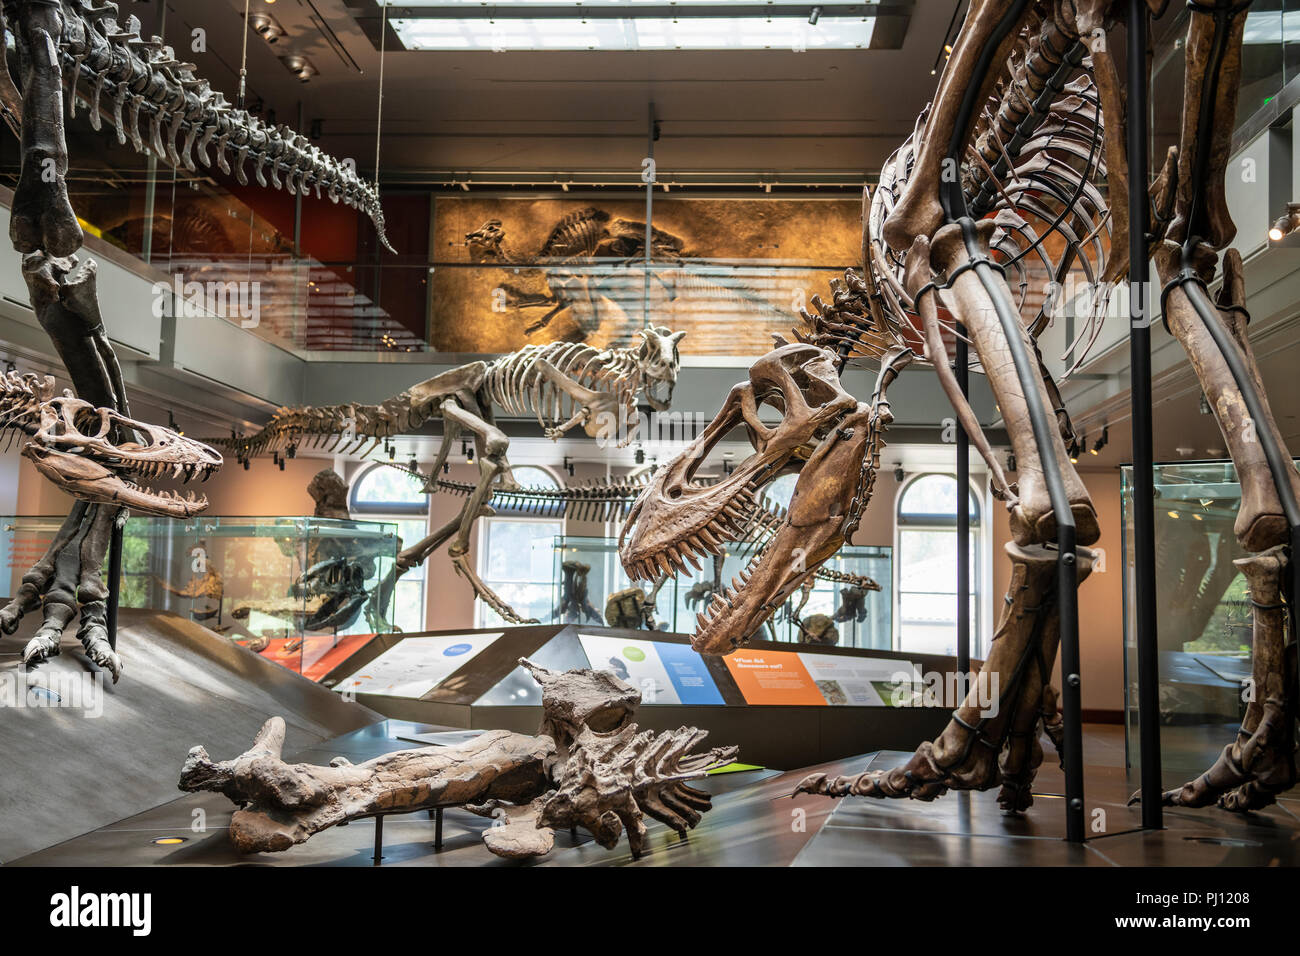 Le Musée d'histoire naturelle du comté de Los Angeles est le plus grand musée historique et naturel dans l'ouest des États-Unis. Ses collections : nw Banque D'Images